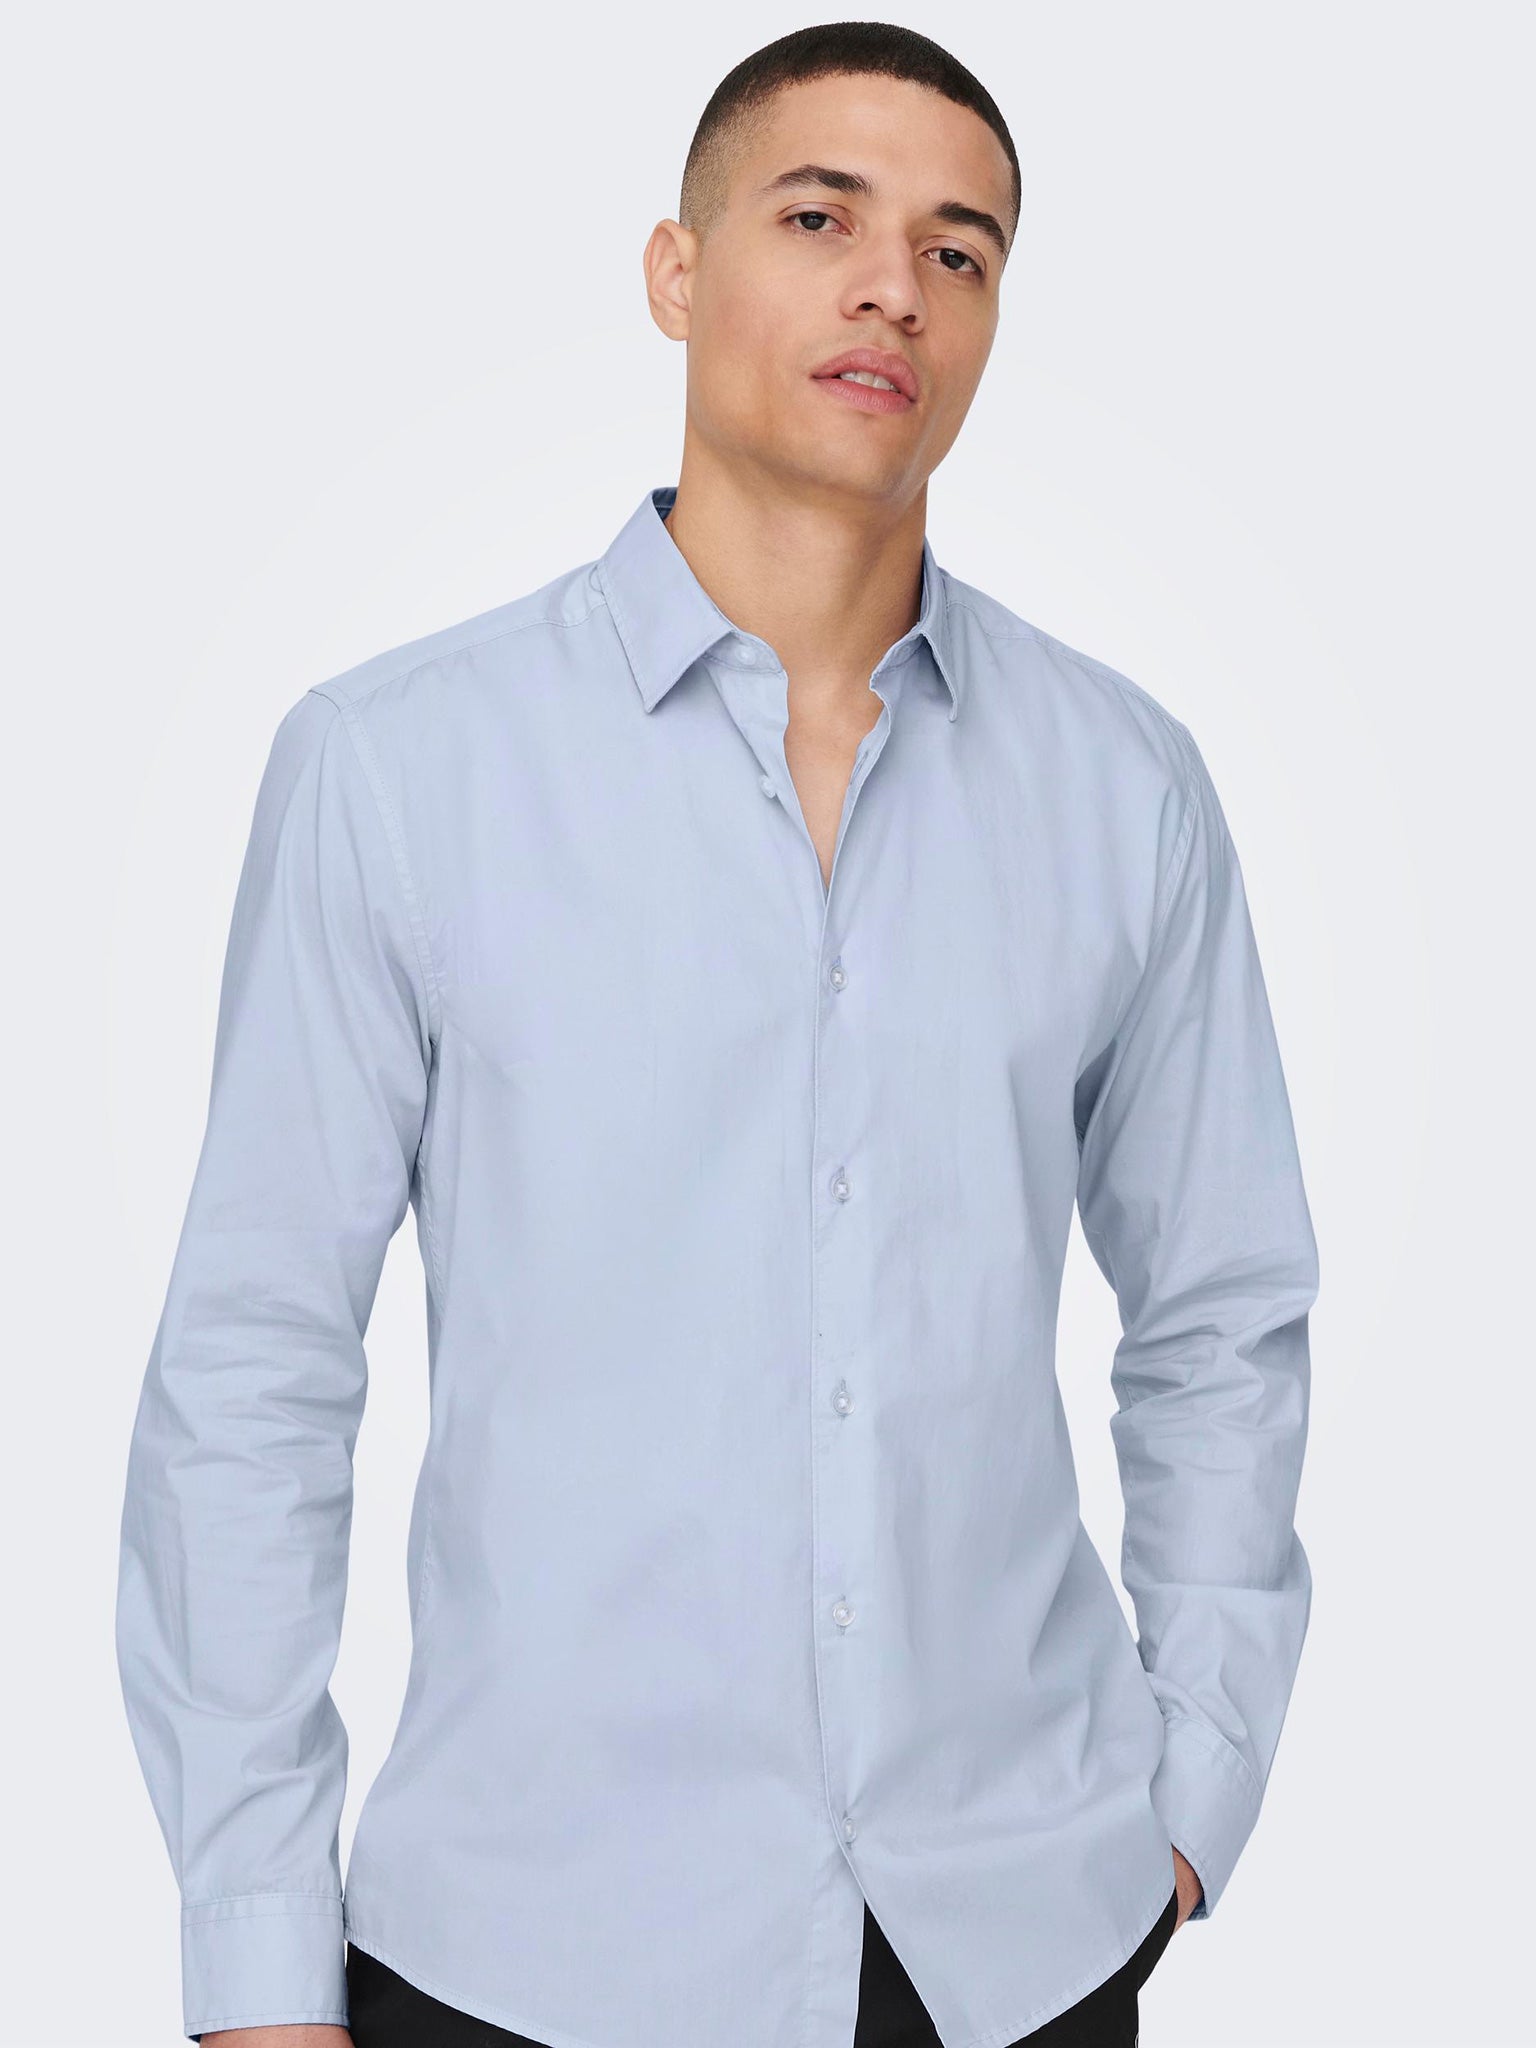 Ανδρικό πουκάμισο ONSANDY SLIM EASY IRON POPLIN SHIRT NOOS 22026000 | 22026000